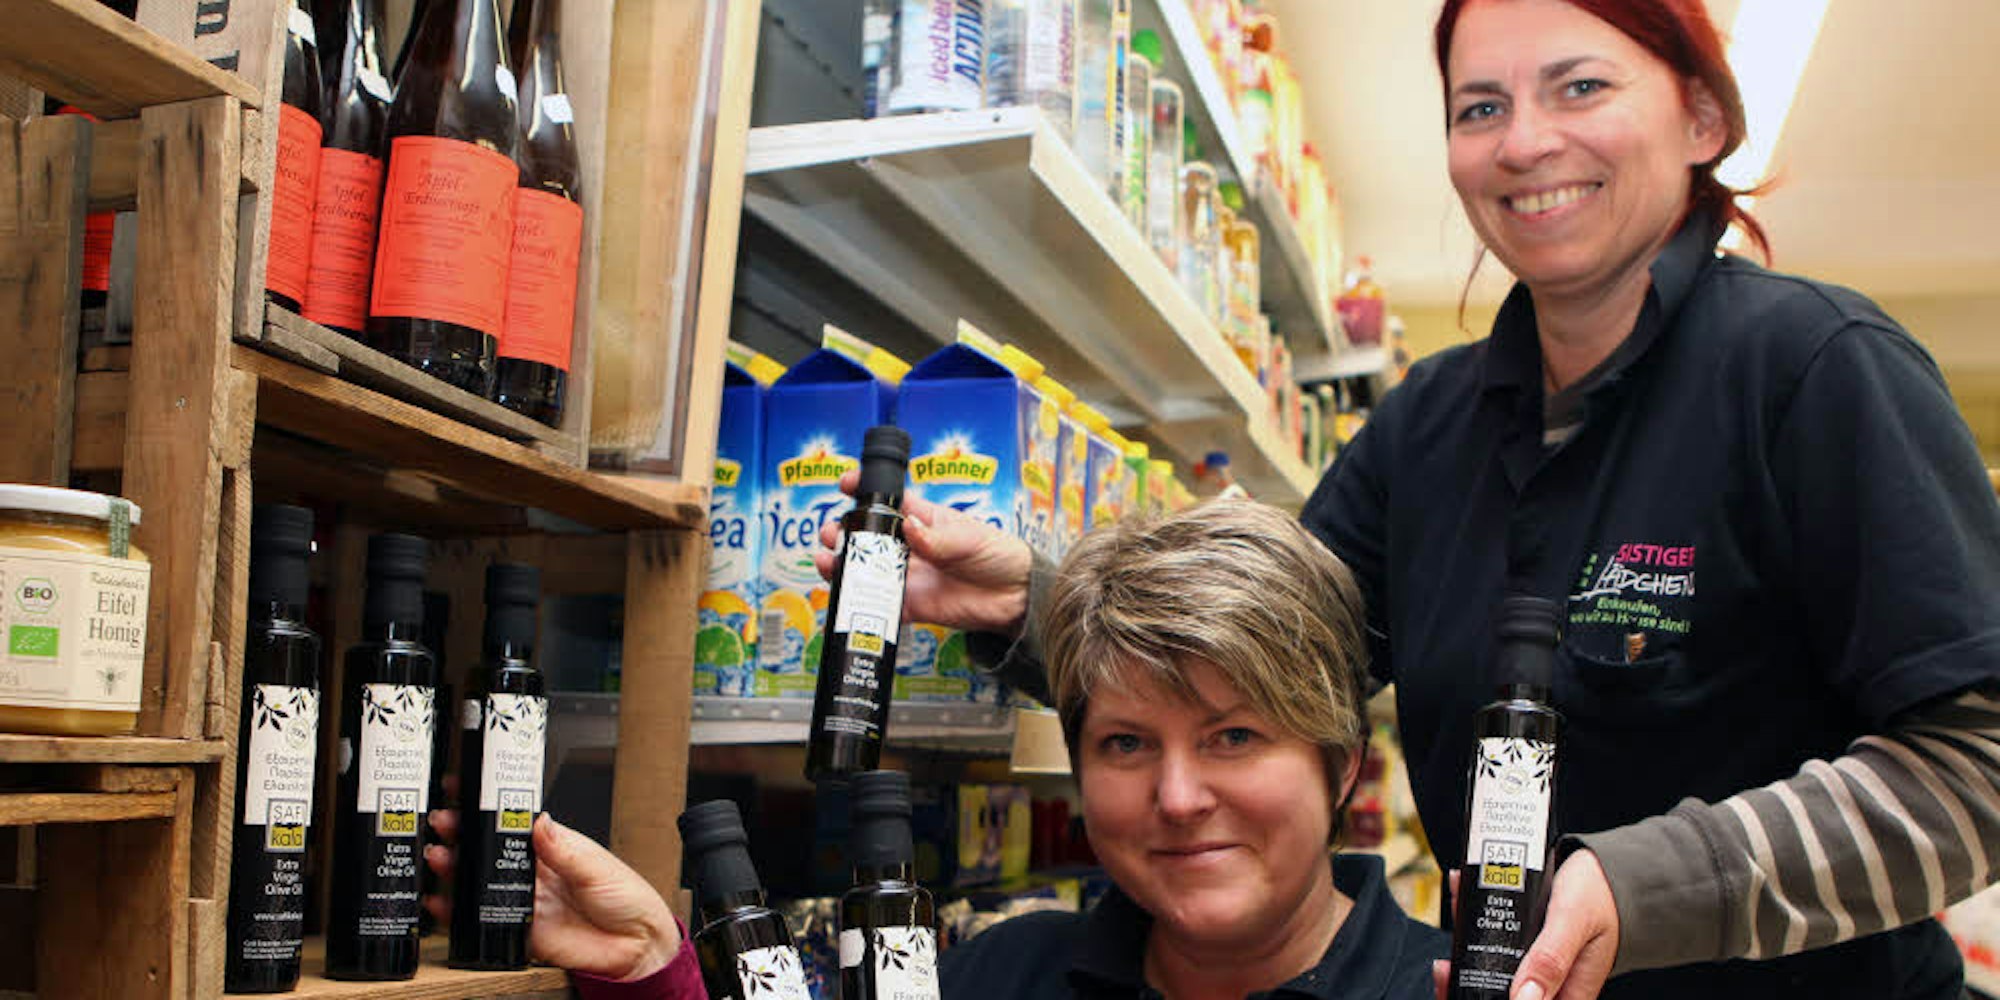 Eine von sieben Verkaufsstellen in Deutschland für Bauer Spyridakis’ Öl ist Sistig. Kerstin Betz (l.) und Anja Schmitz räumen die Flaschen ins Regal des Dorflädchens.